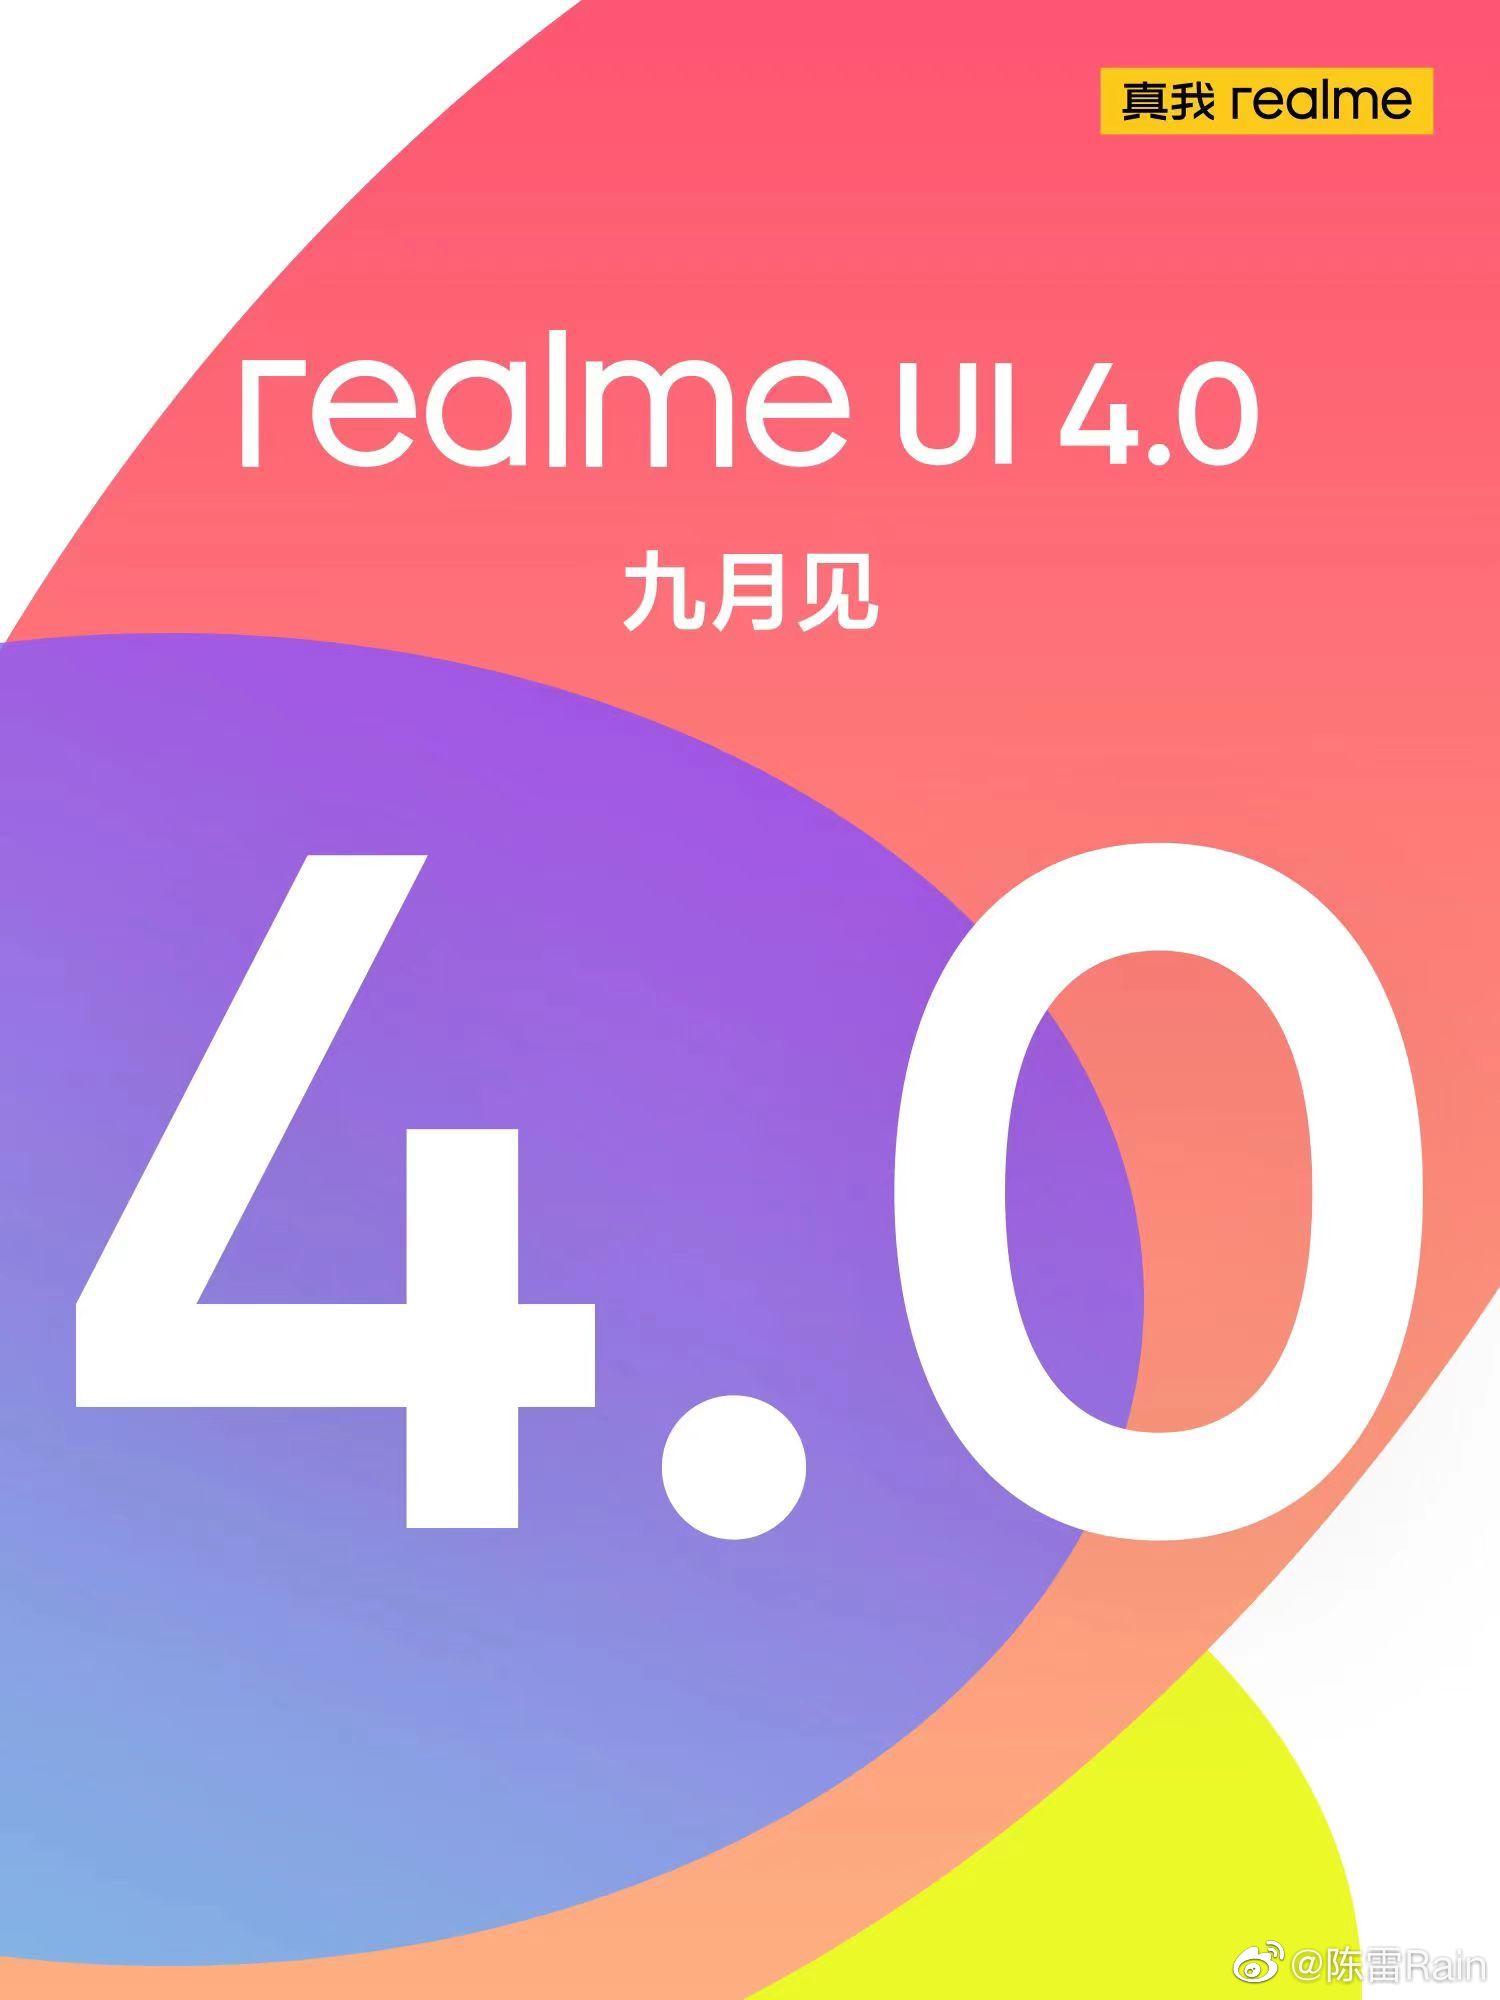 Realme UI 4.0 Logo